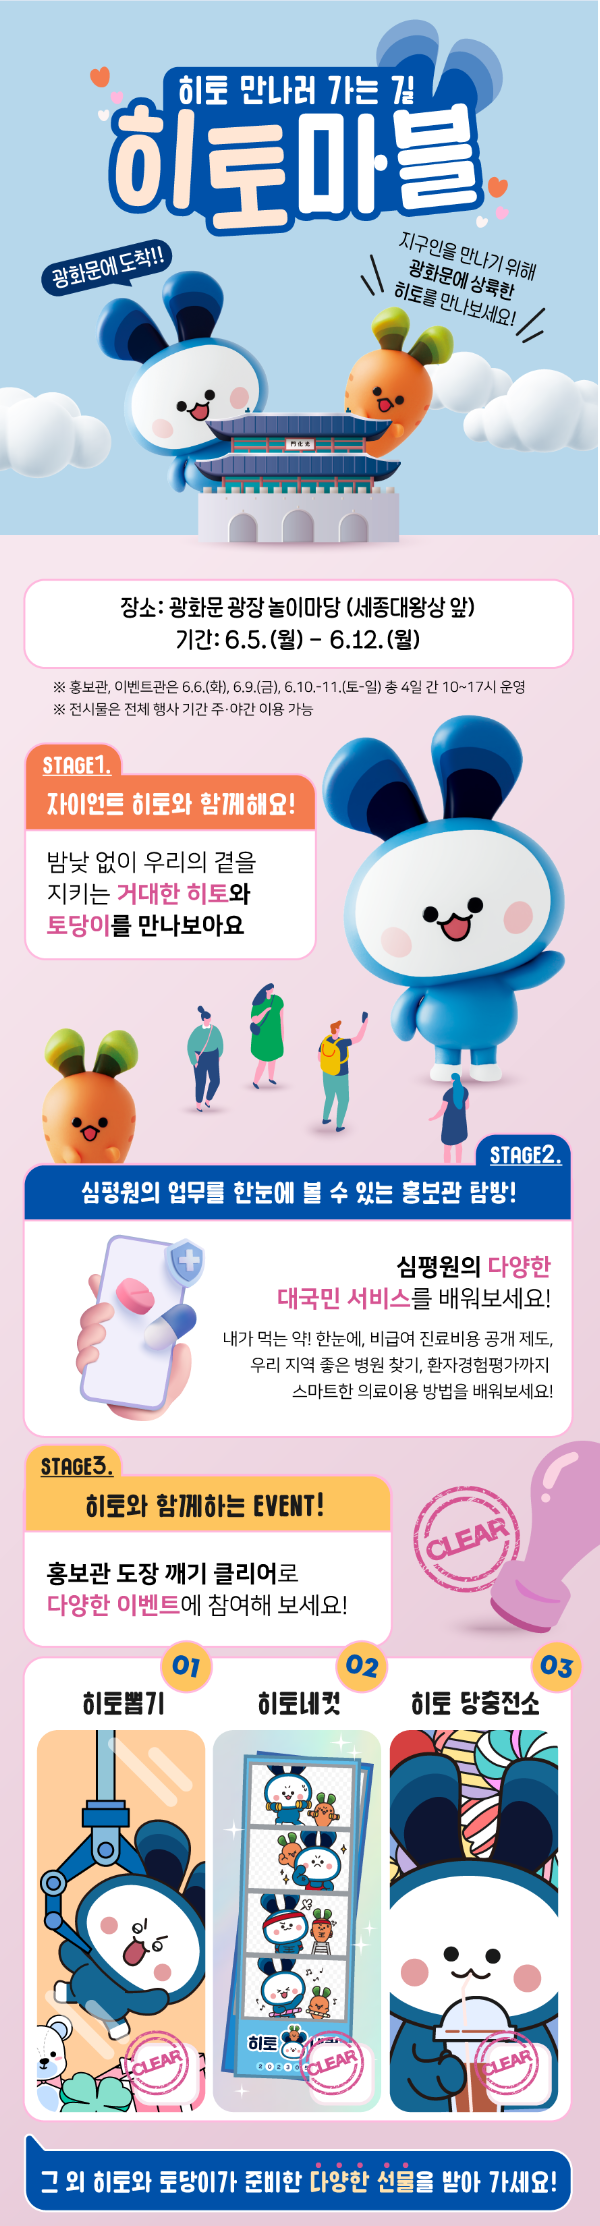 심평원, 5~12일 광화문 광장서 TV 광고 론칭 기념 오프라인 프로모션 개최